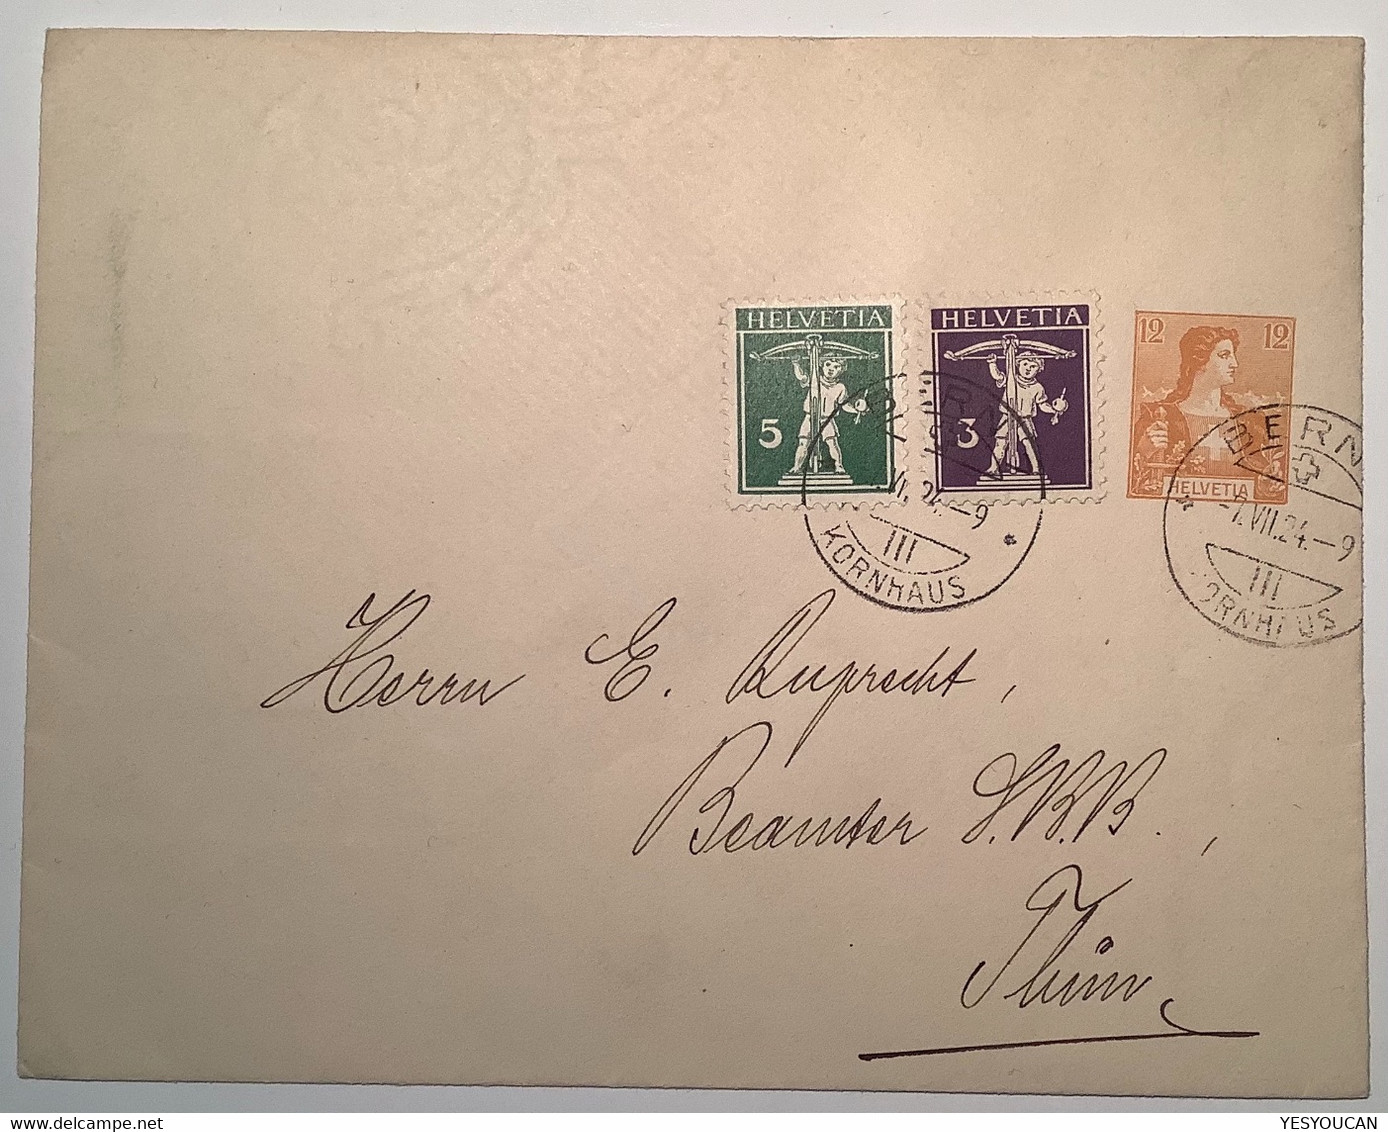 Privatganzsache: PHILATELISTEN VEREIN BERN 1924 12 Rp Helvetia Brustschild Umschlag(Schweiz Philately Stamp Club P.t.o - Ganzsachen